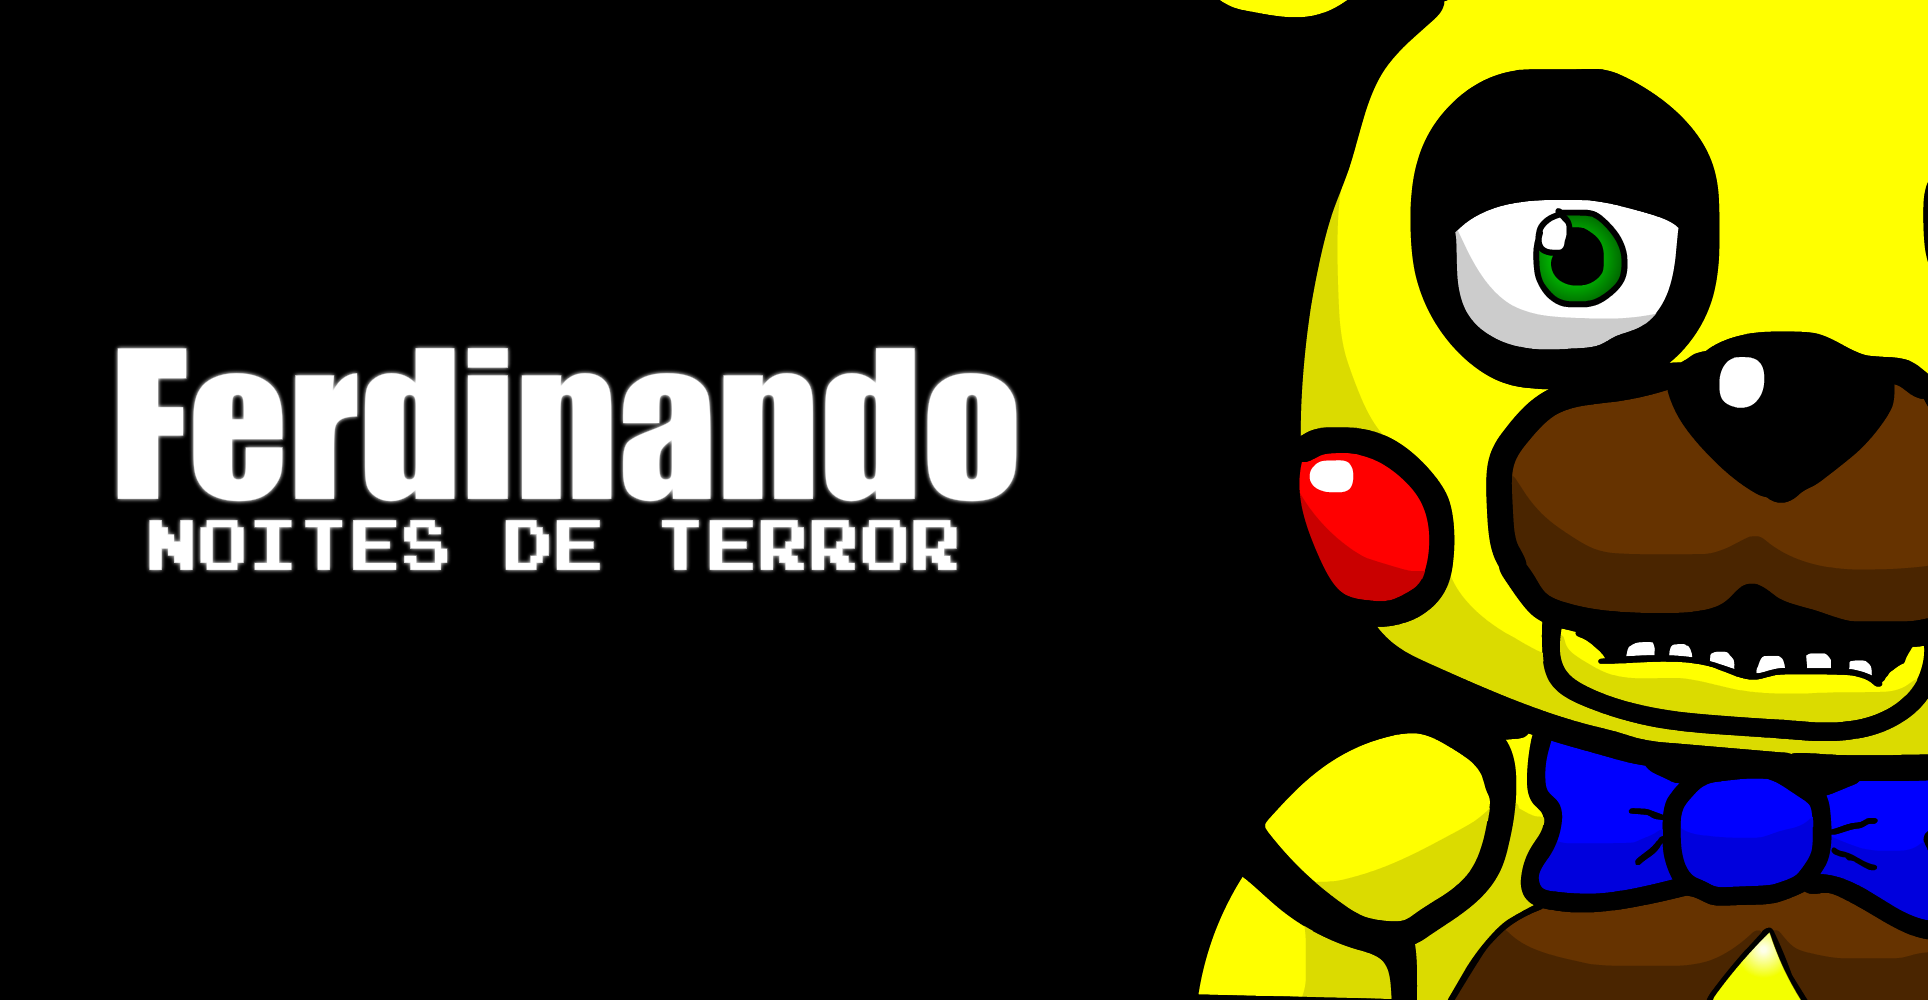 Ferdinando Noites de Terror